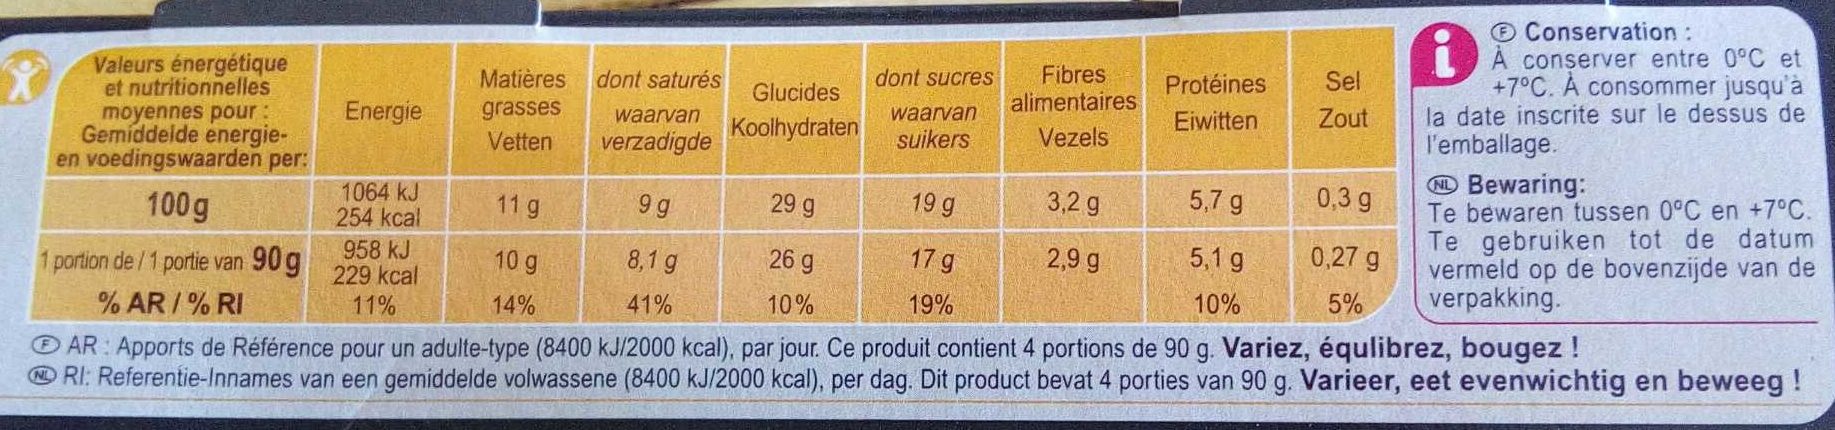 Profiteroles au chocolat - Nutrition facts - fr